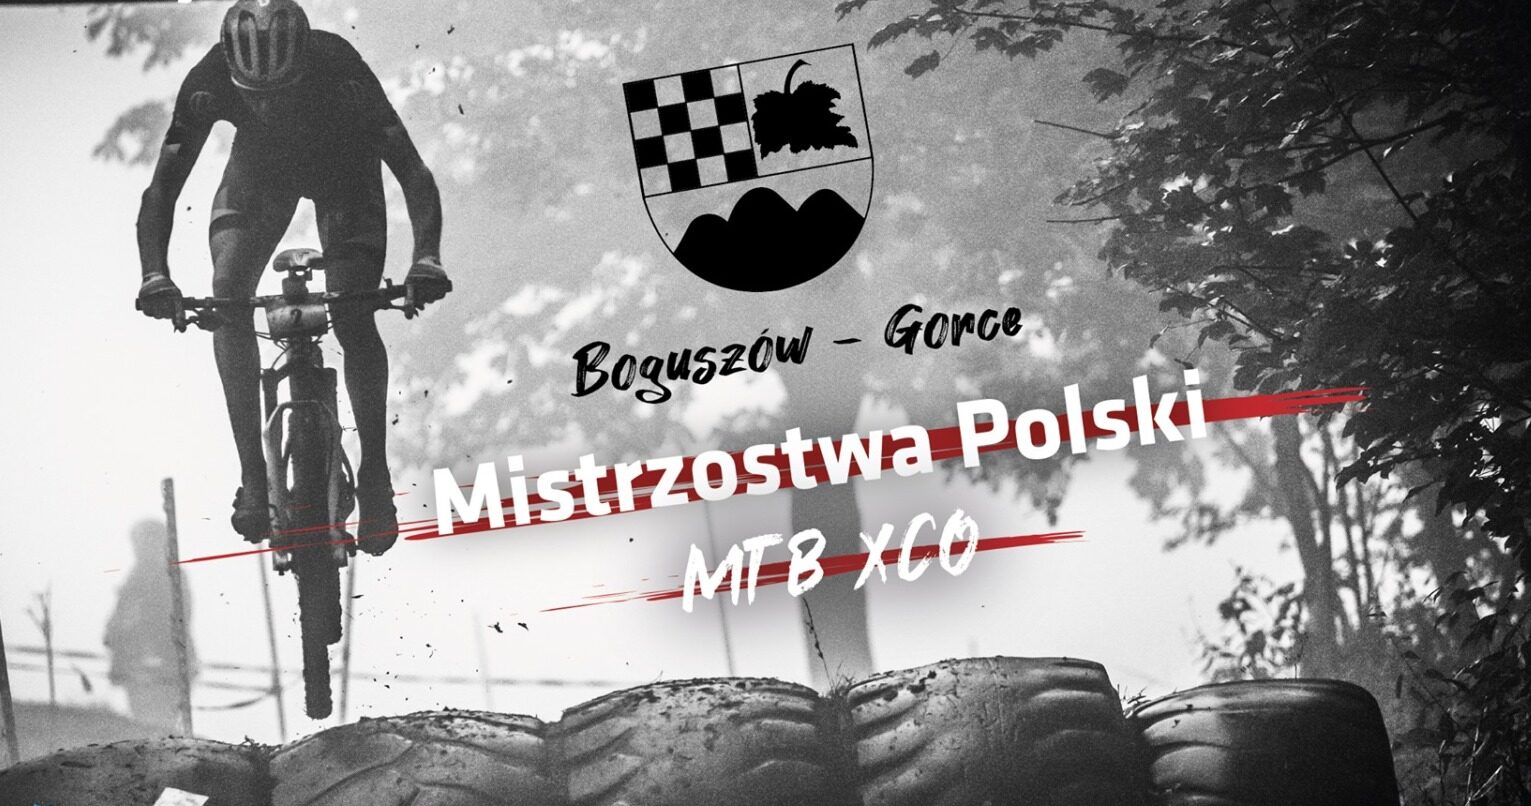 MP XCO 2021, Boguszów-Gorce – program, listy startowe, objazd trasy